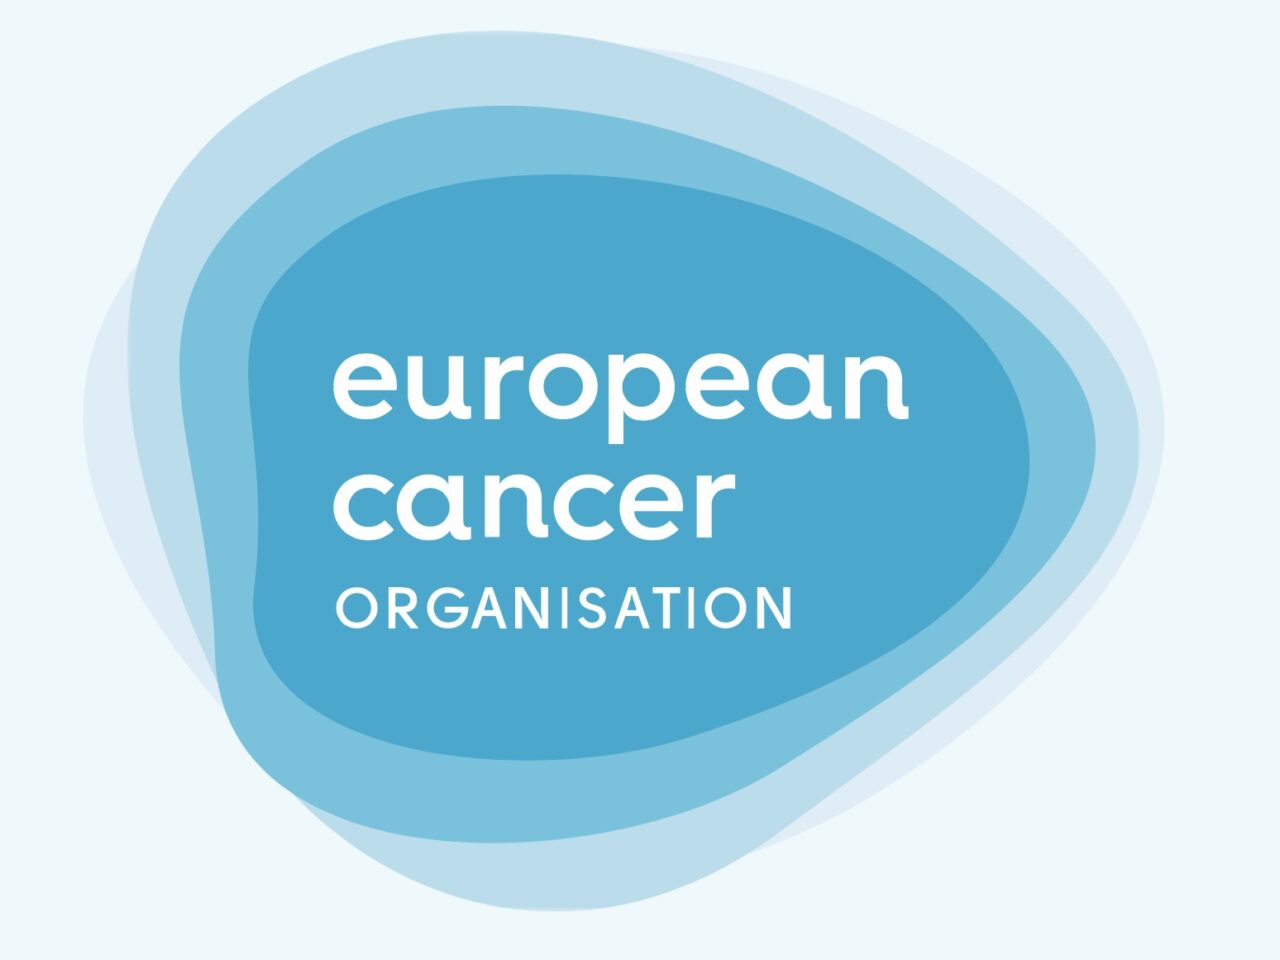 European Cancer Organisation congratulates the European Parliament in reaching agreement on creating a European Health Data Space!